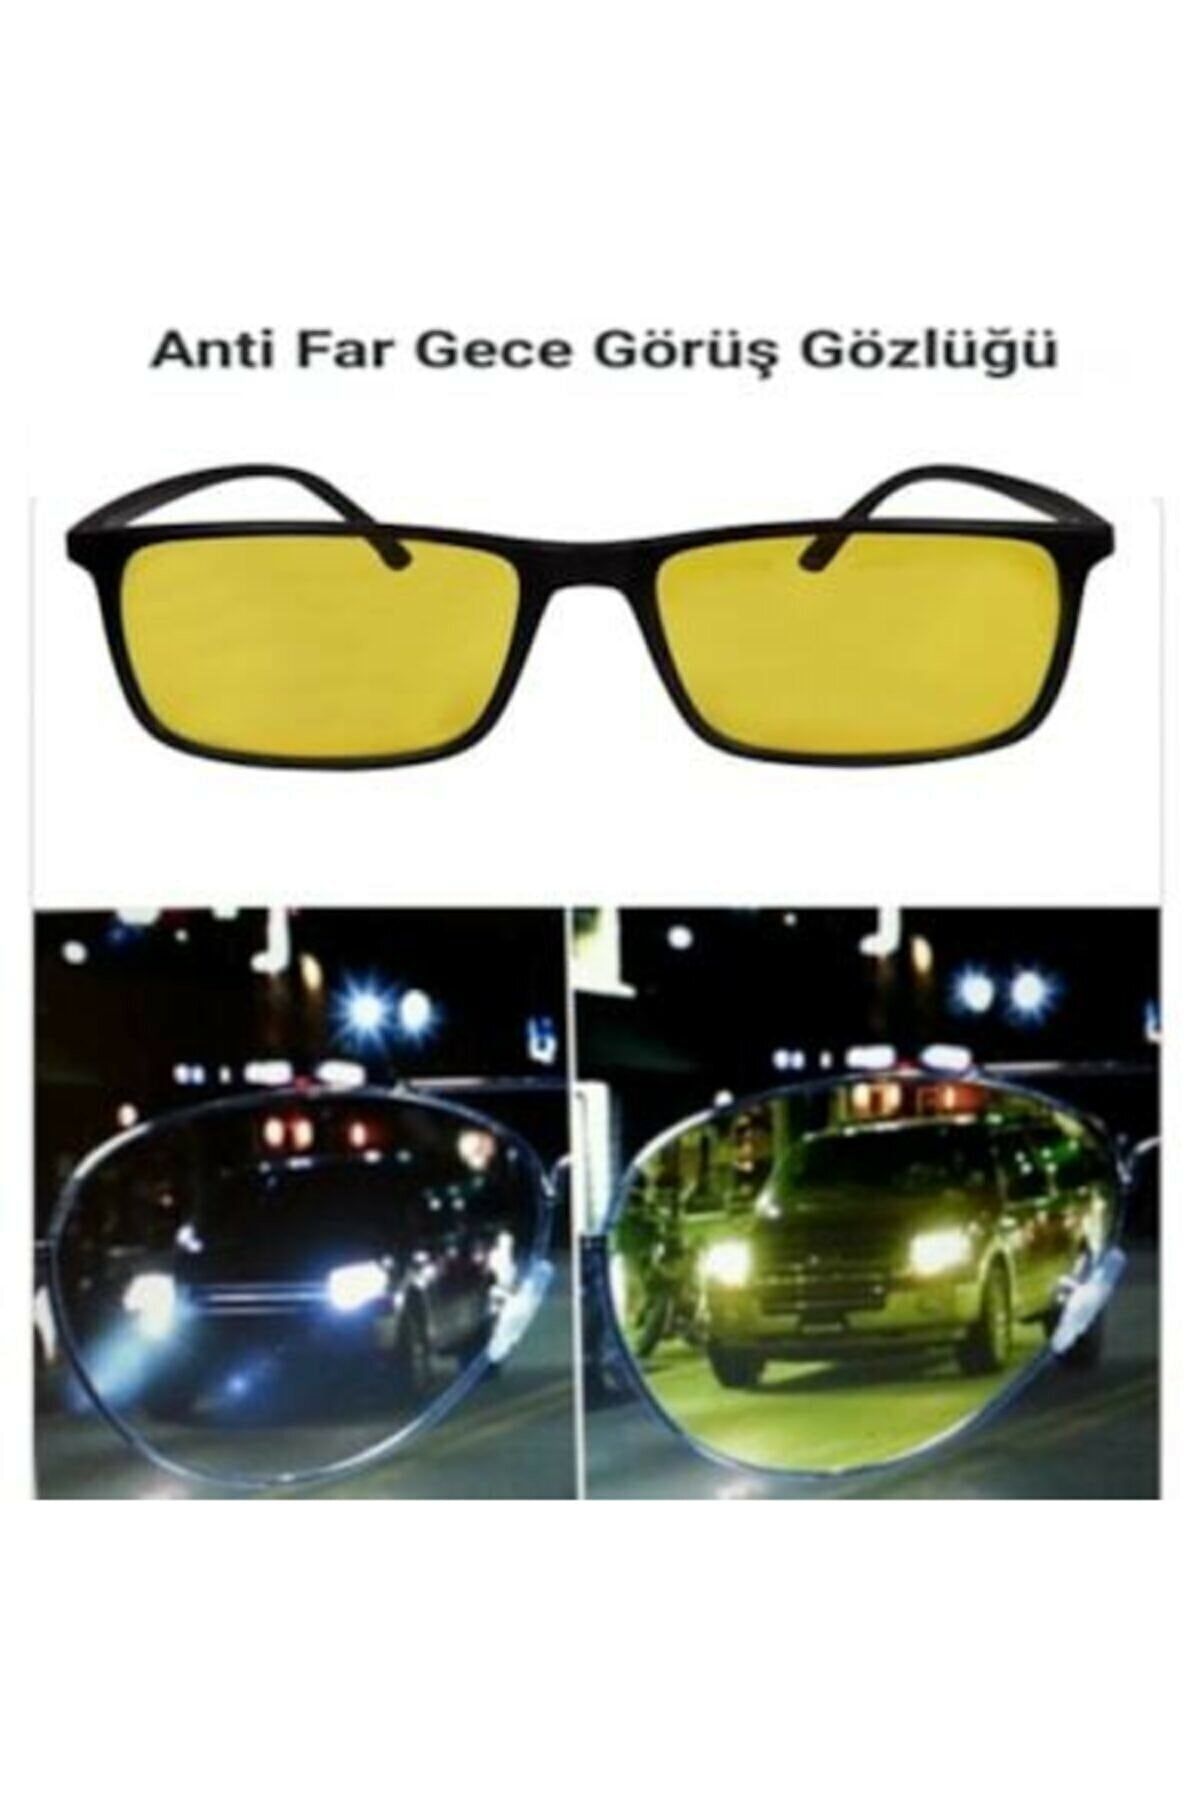 UBK Eyewear Antifar Unisex Gece Sürüş Gözlüğü, Driving Lens & Glasses